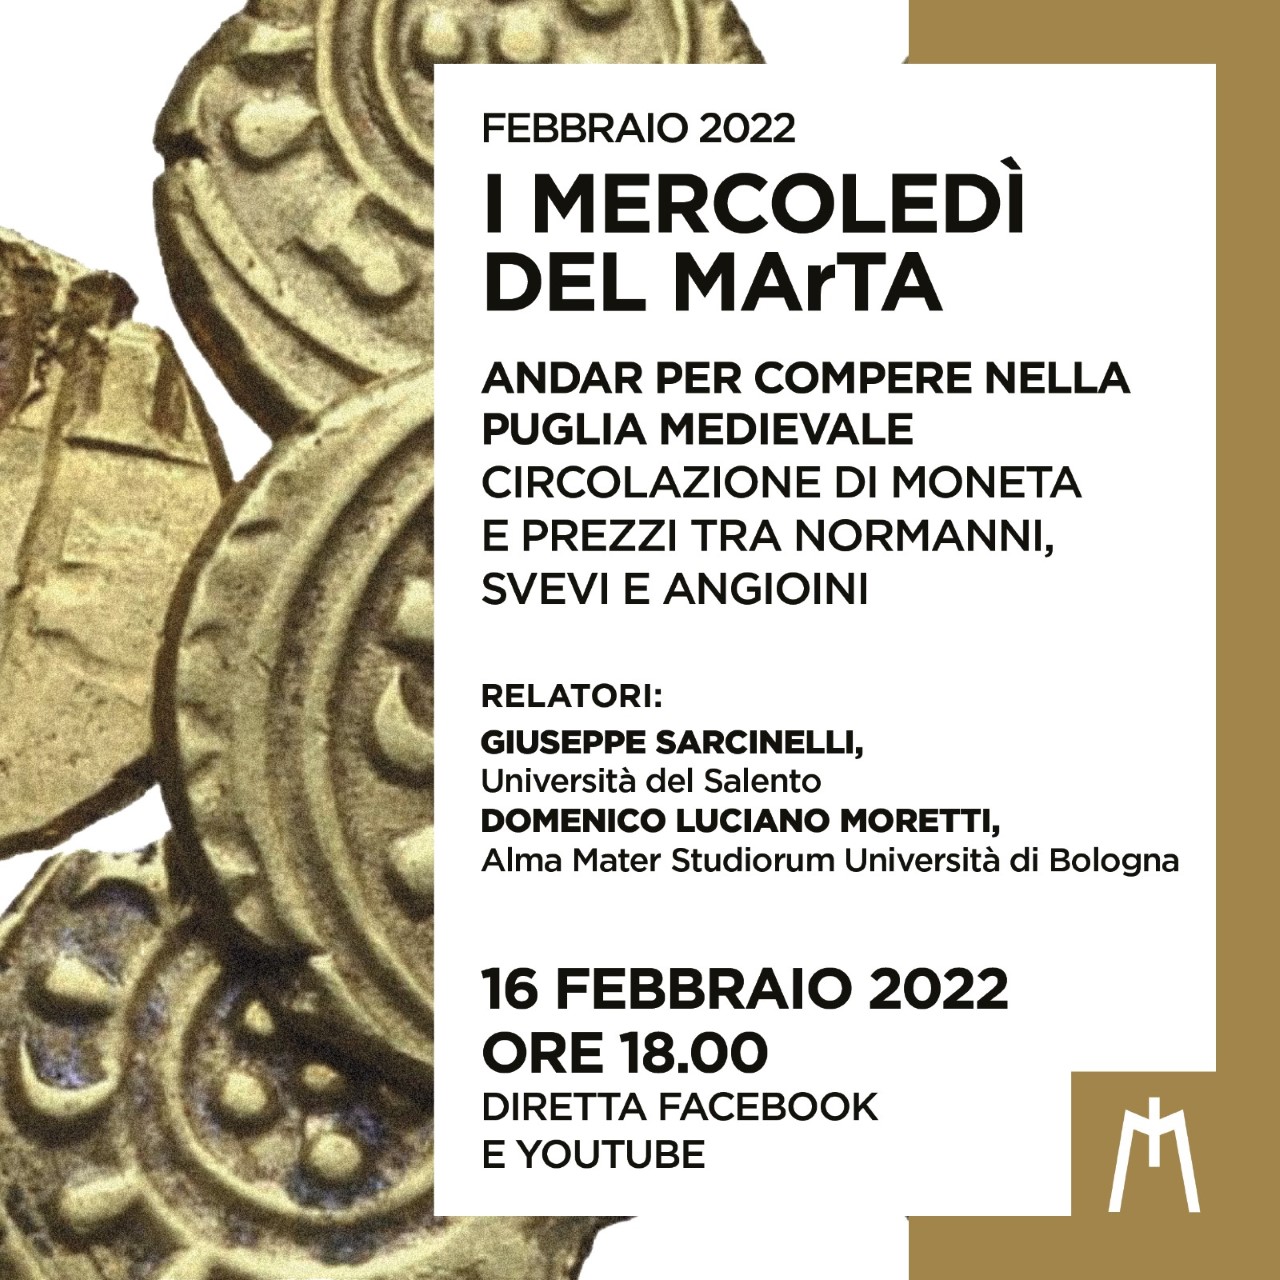 TARANTO. Mercoledì del MArTA”. Oggi mercoledì 16 febbraio, alle 18.00, “Andar per compere nella Puglia Medievale”